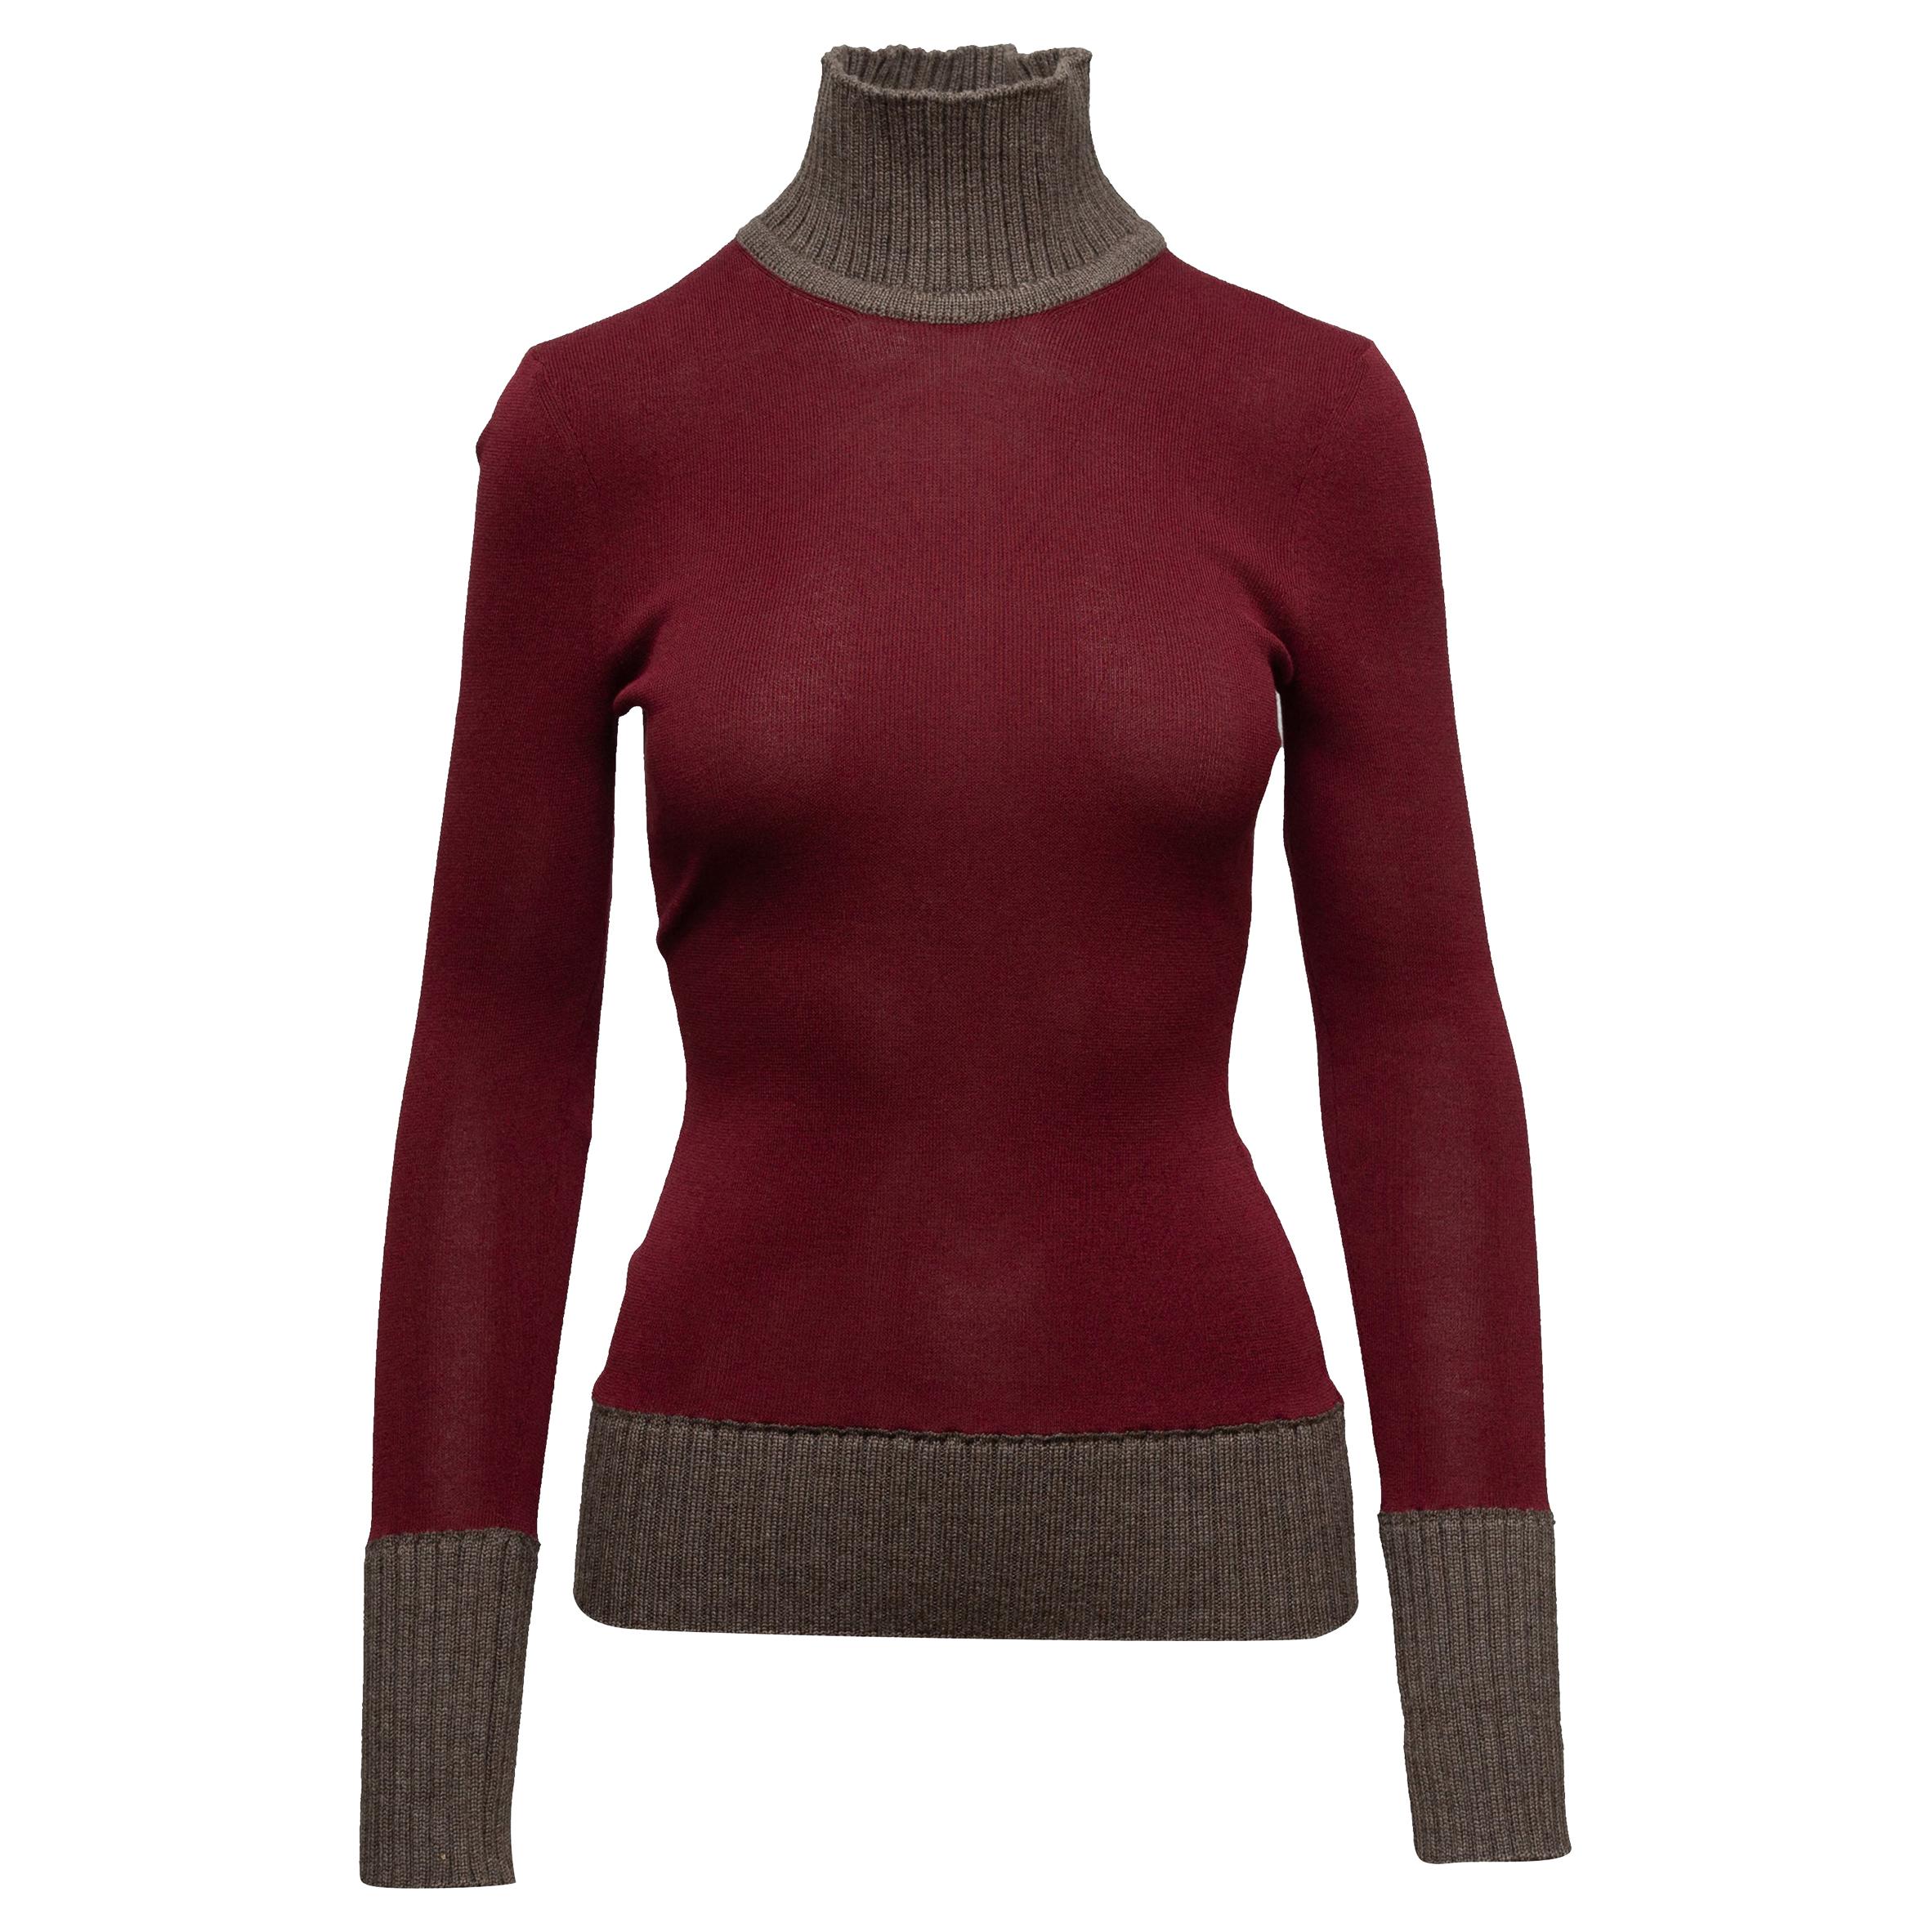 Victoria Beckham Burgundy & Brown Turtleneck Sweater